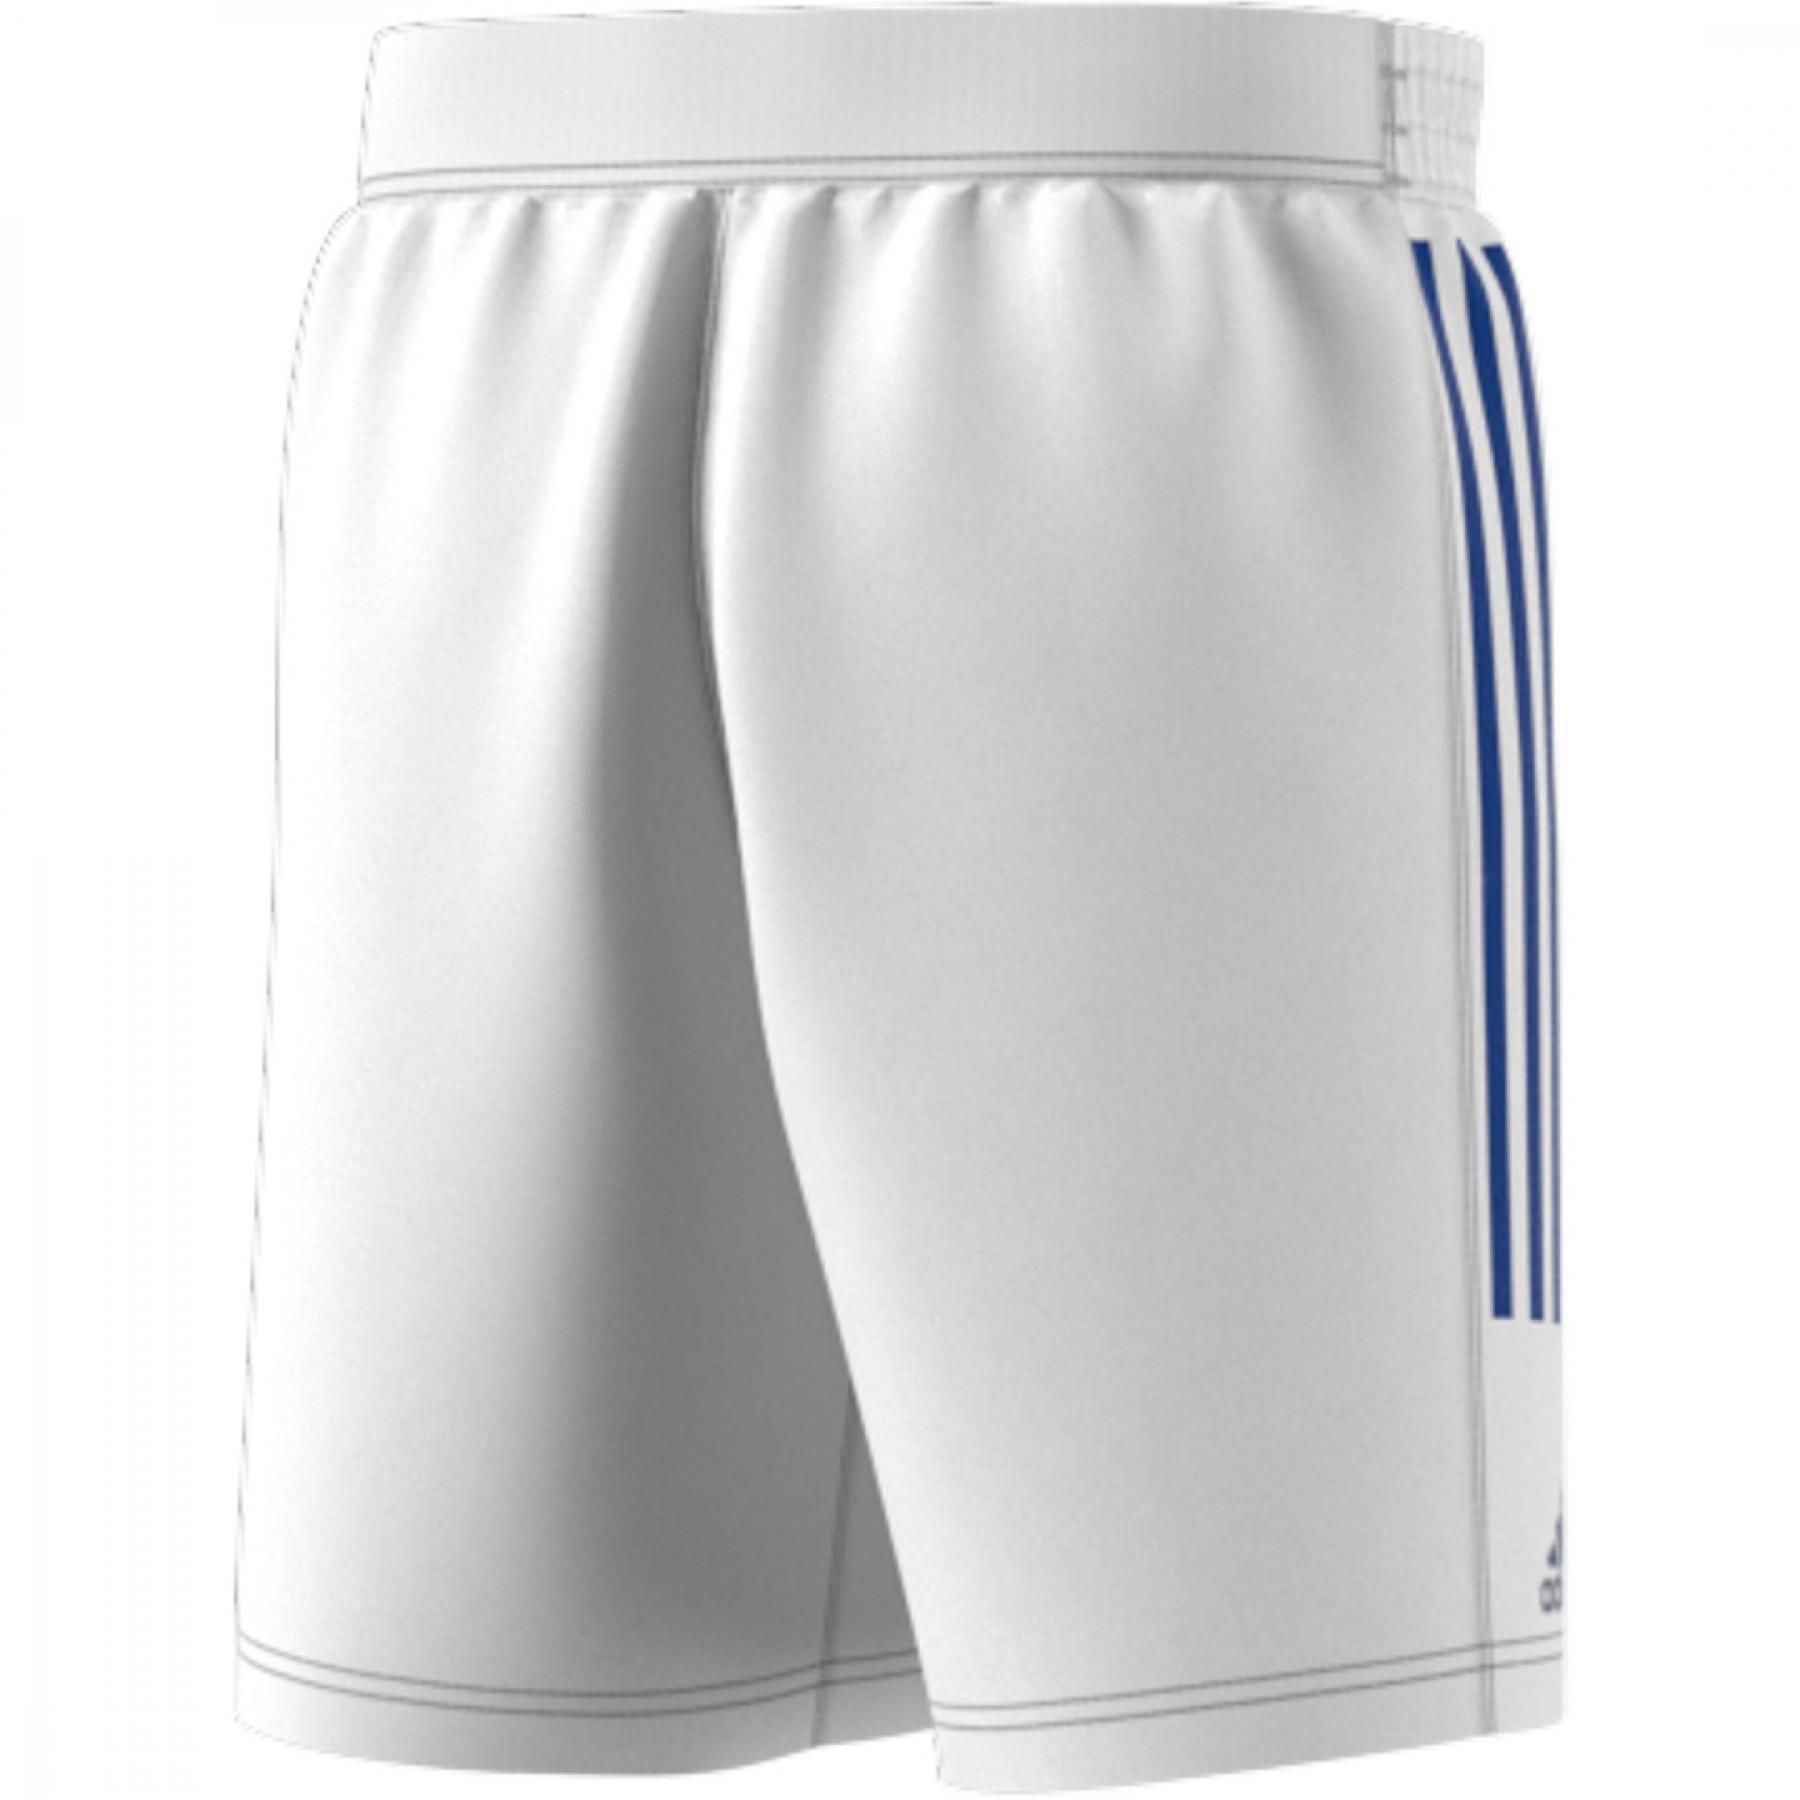 Team shorts from France Handball 2021